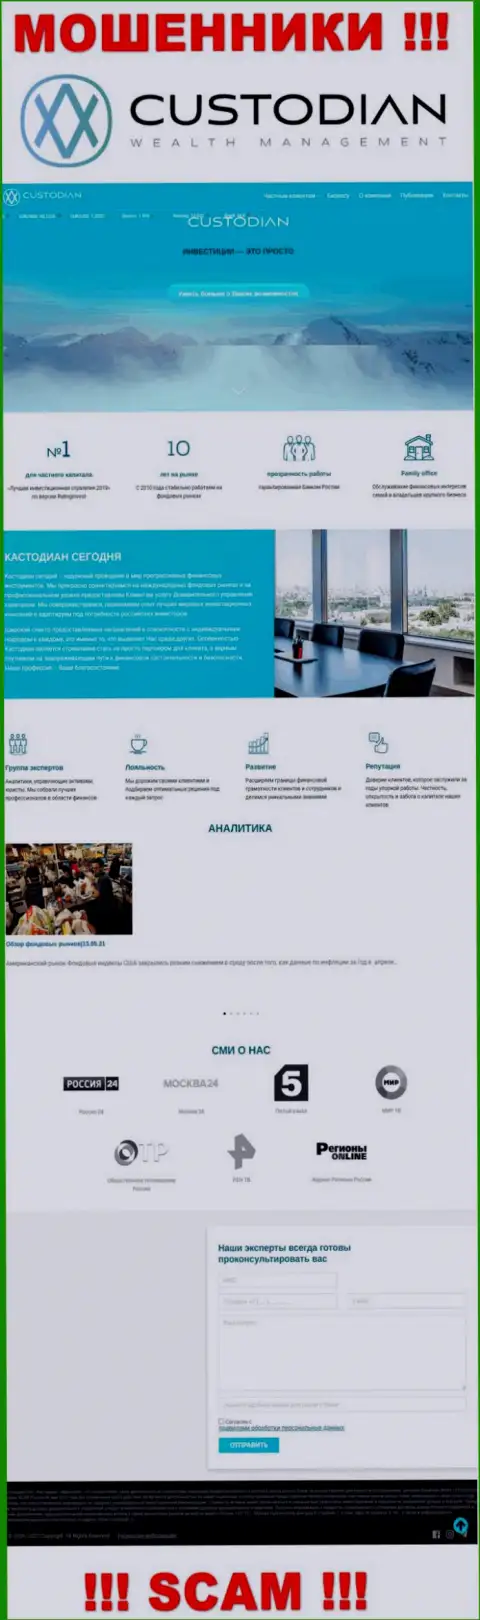 Скриншот официального сайта противоправно действующей компании Кустодиан